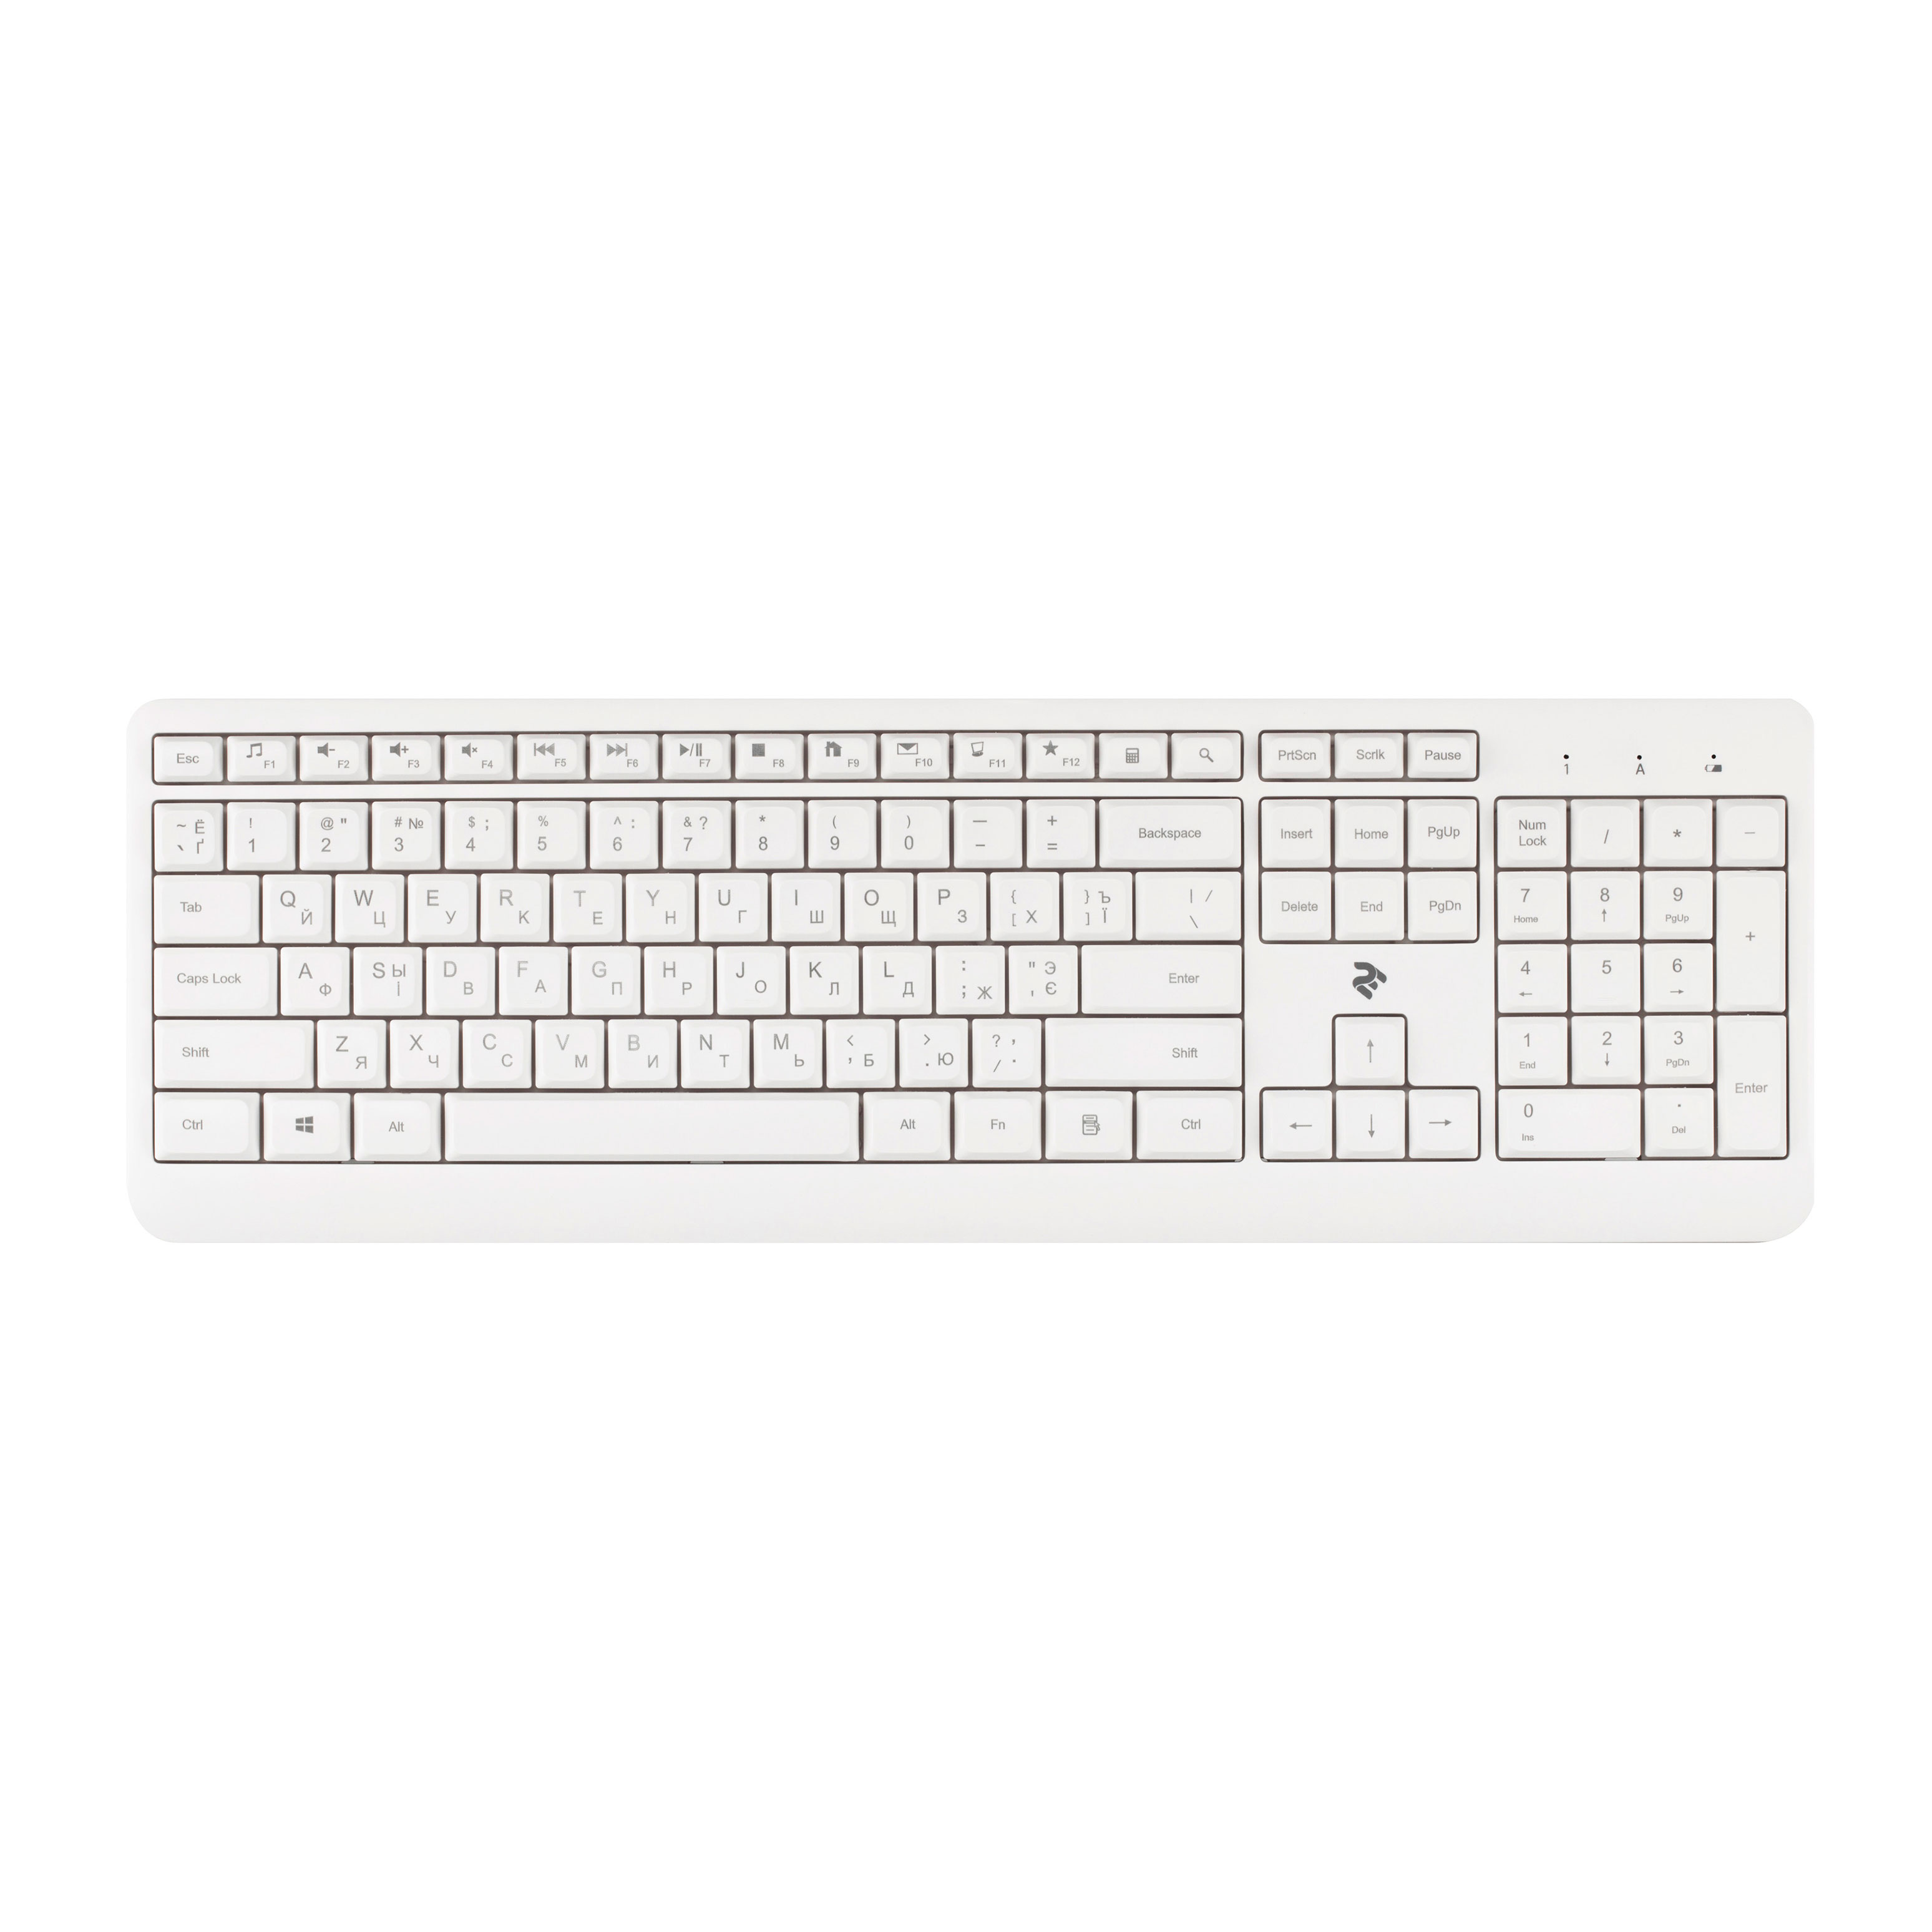 Клавиатура 2Е KS220 WL White